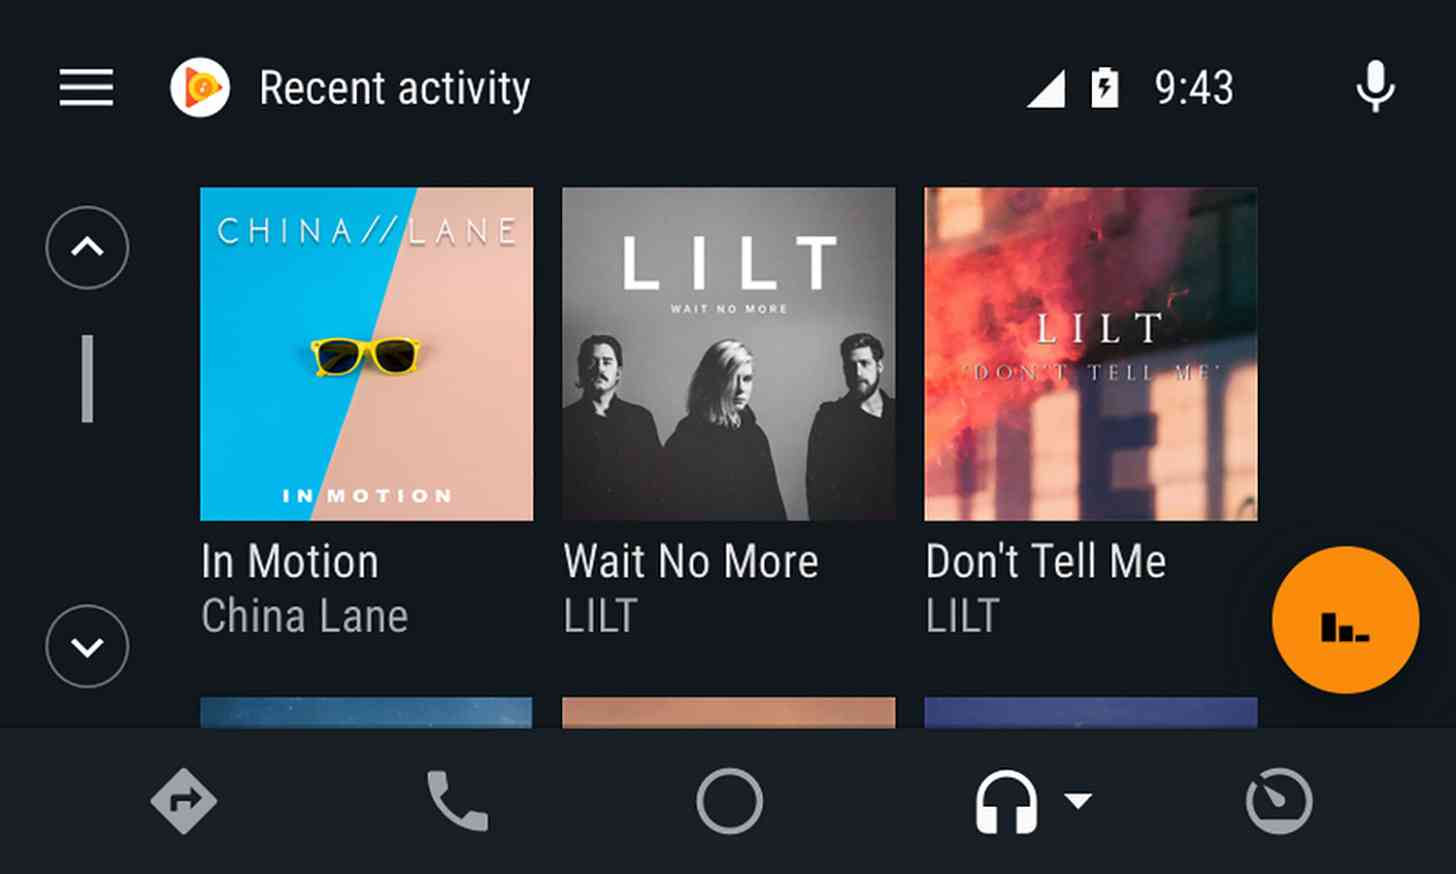 Android Auto media album art